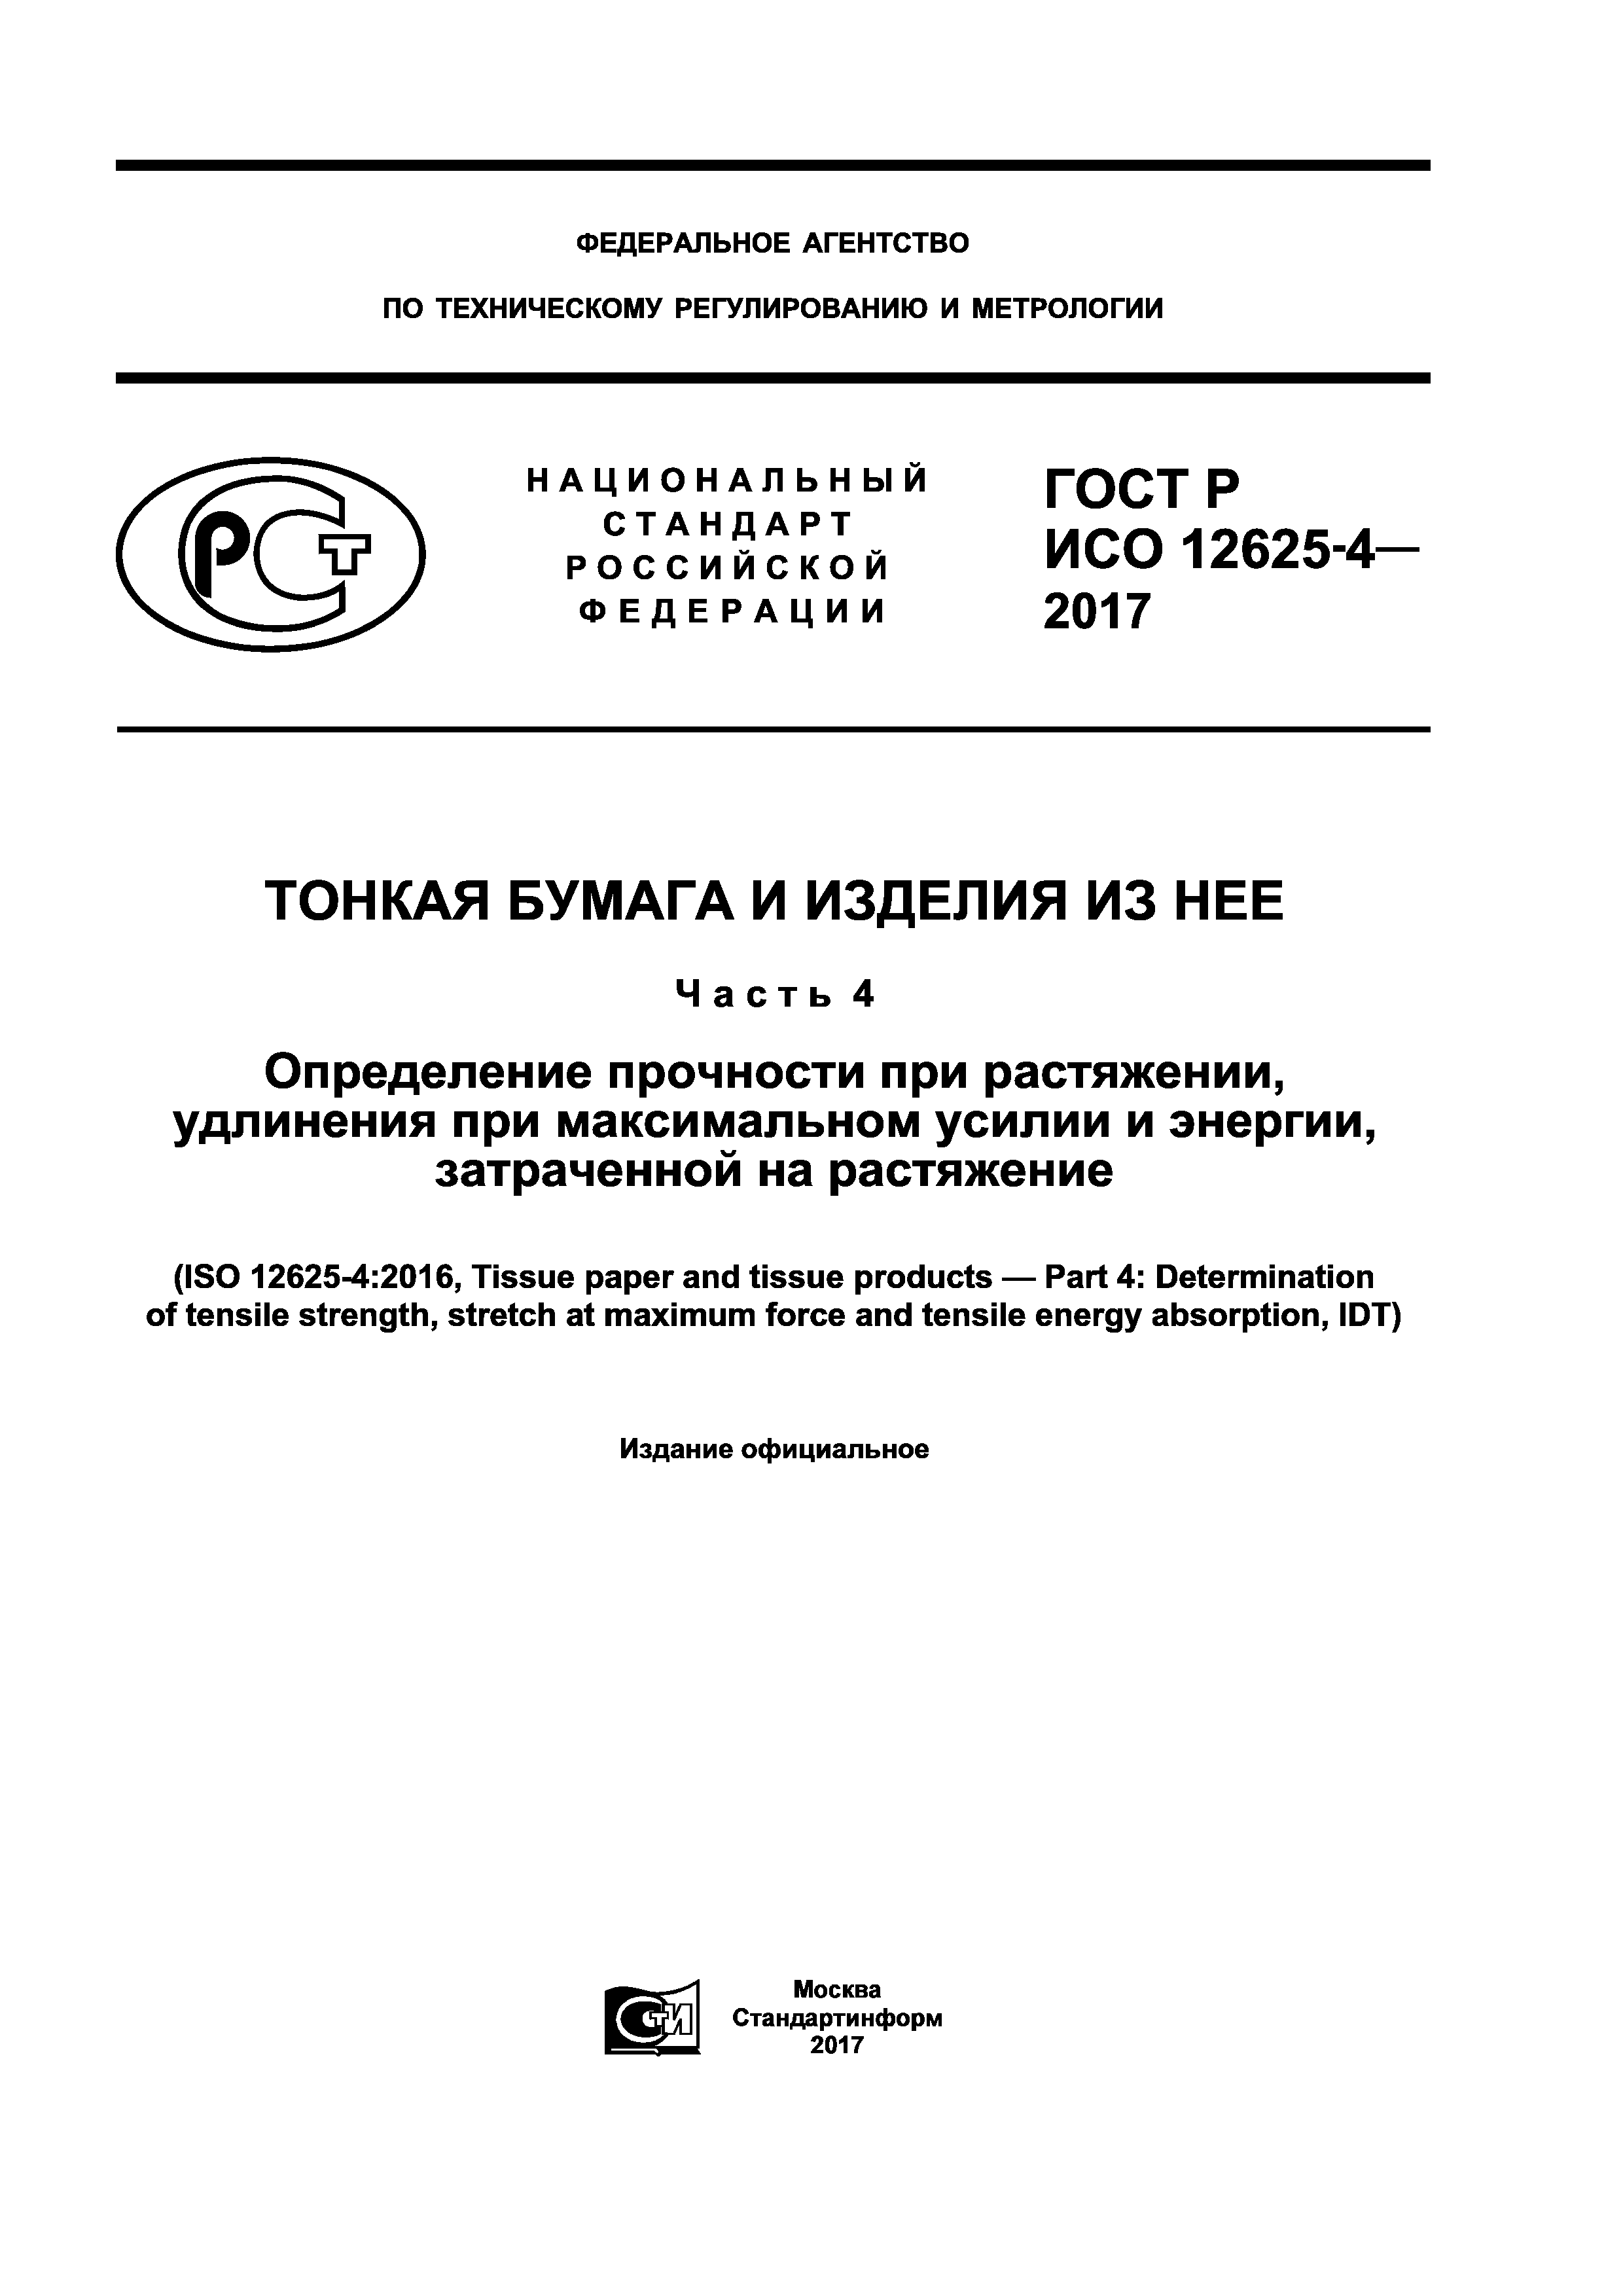 ГОСТ Р ИСО 12625-4-2017